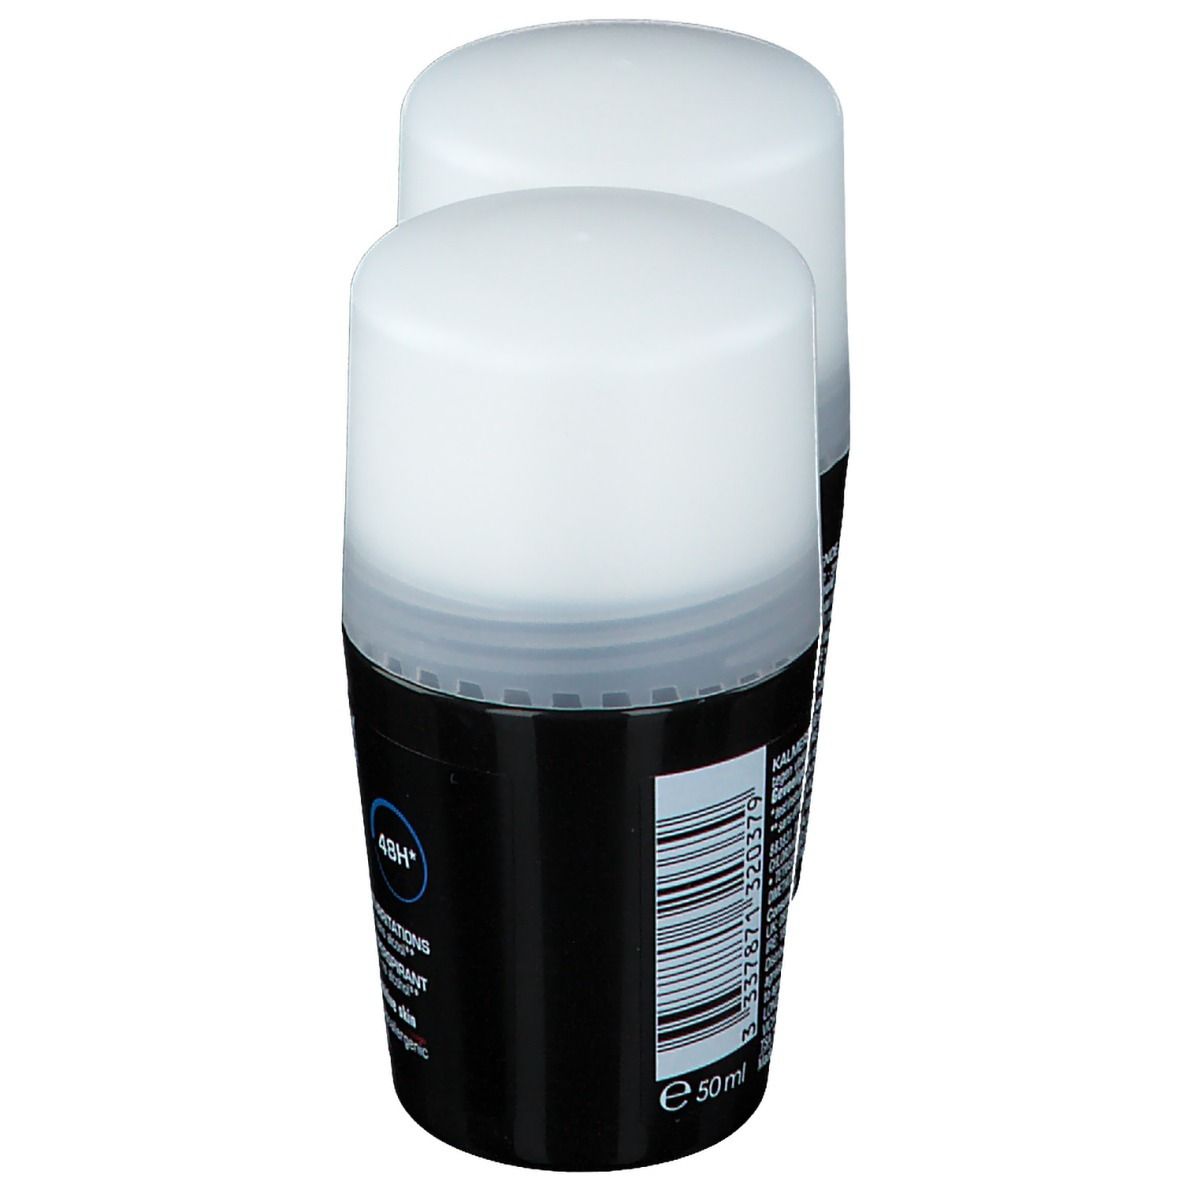 VICHY HOMME Déodorant antitranspirant 48h peaux sensibles